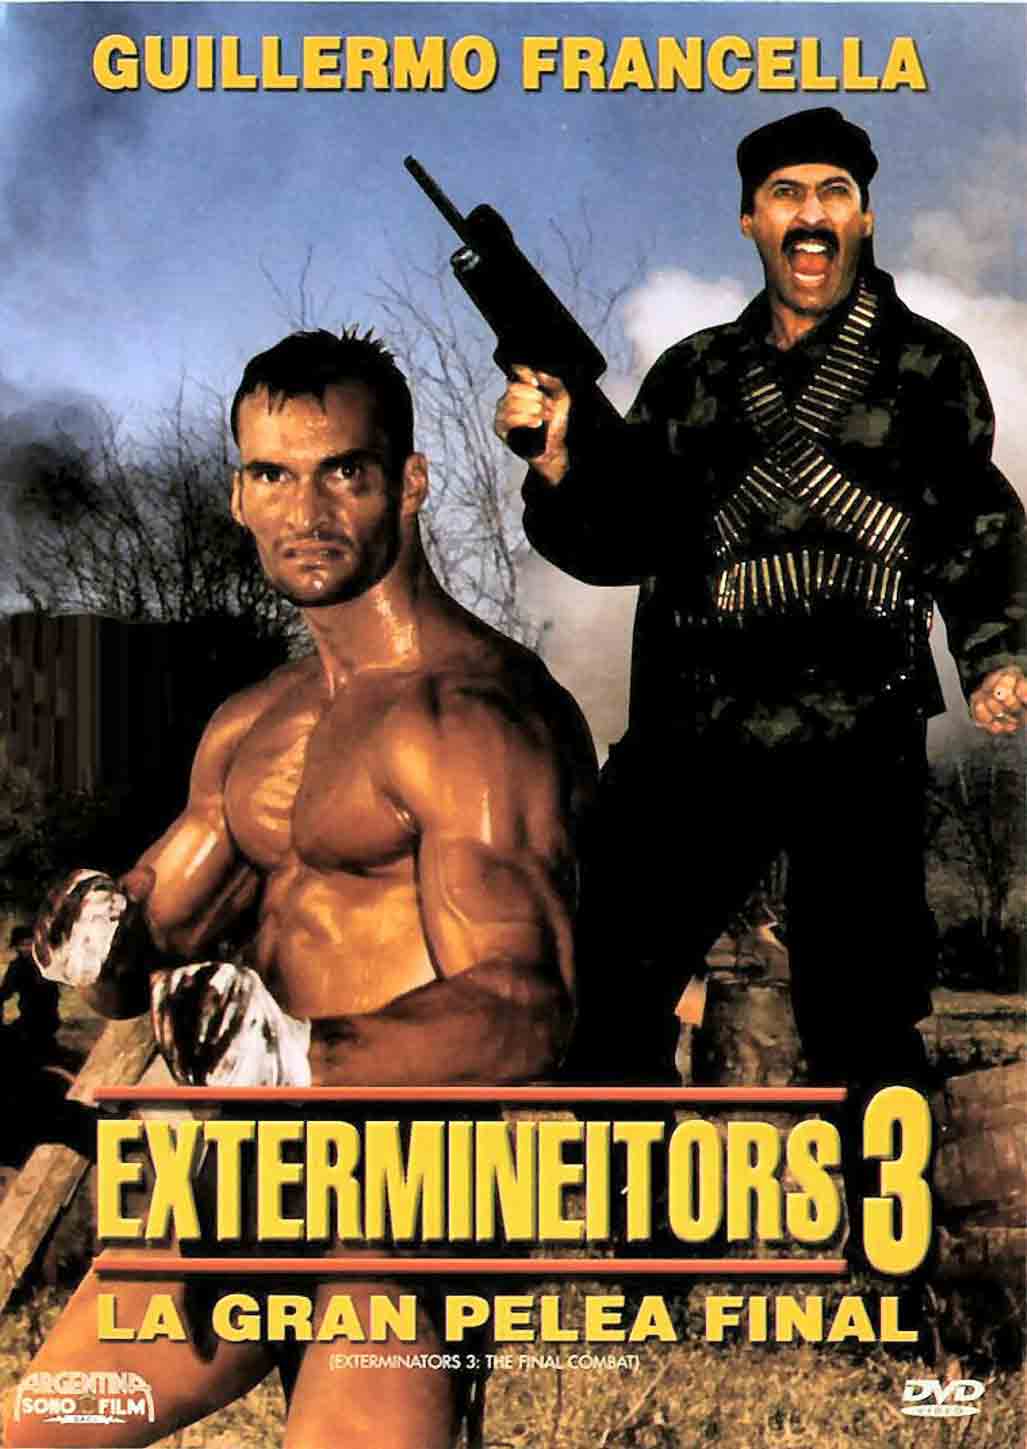 Extermineitors 3: La gran pelea final (1991) Screenshot 1